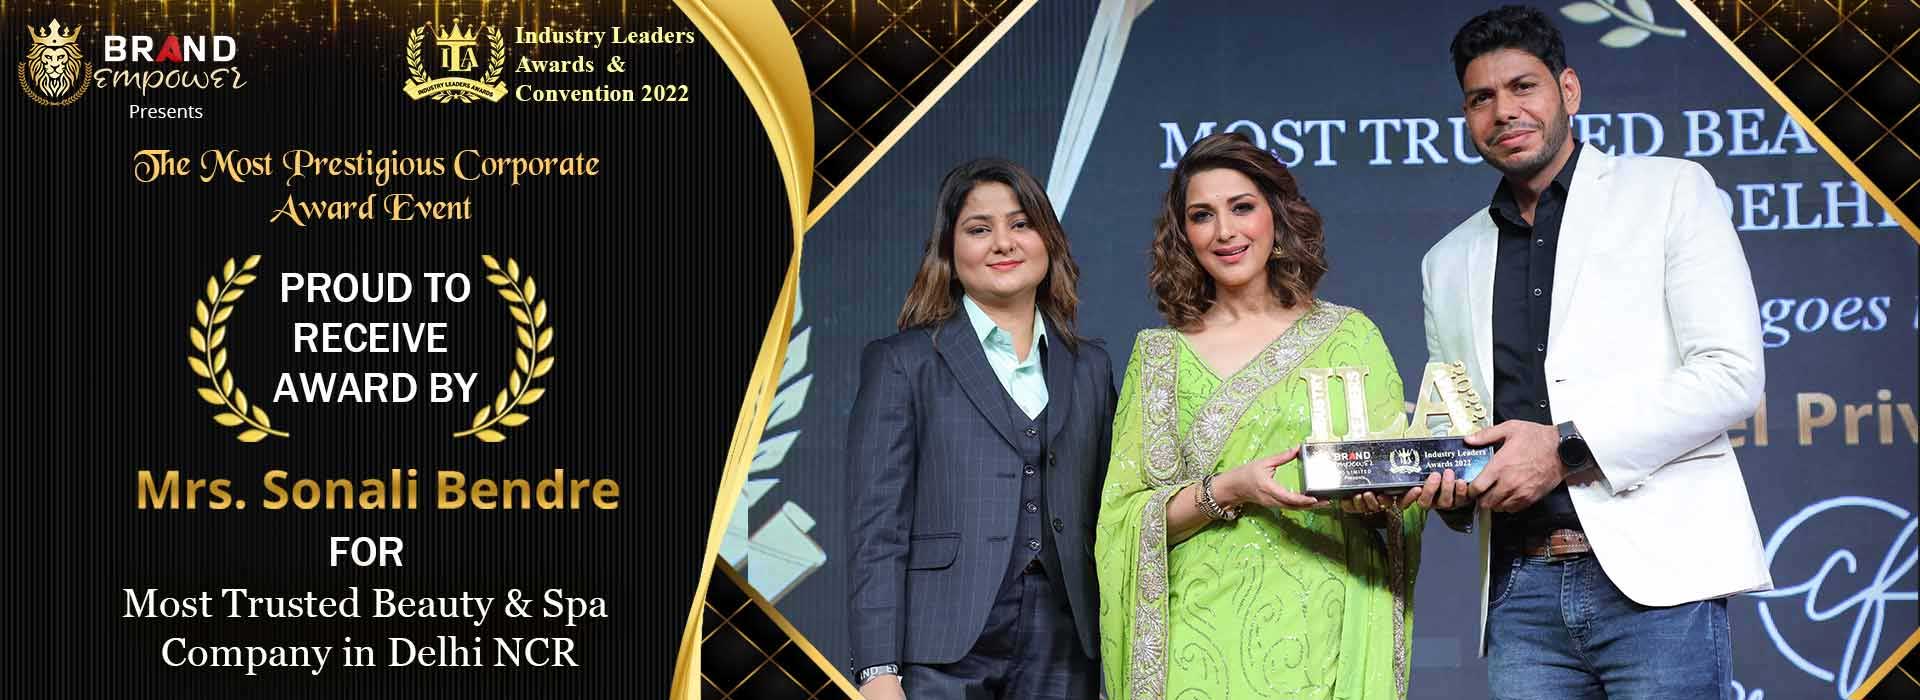 Winner of Industry Leaders Awards 2022 in Punjabi Bagh Enclave